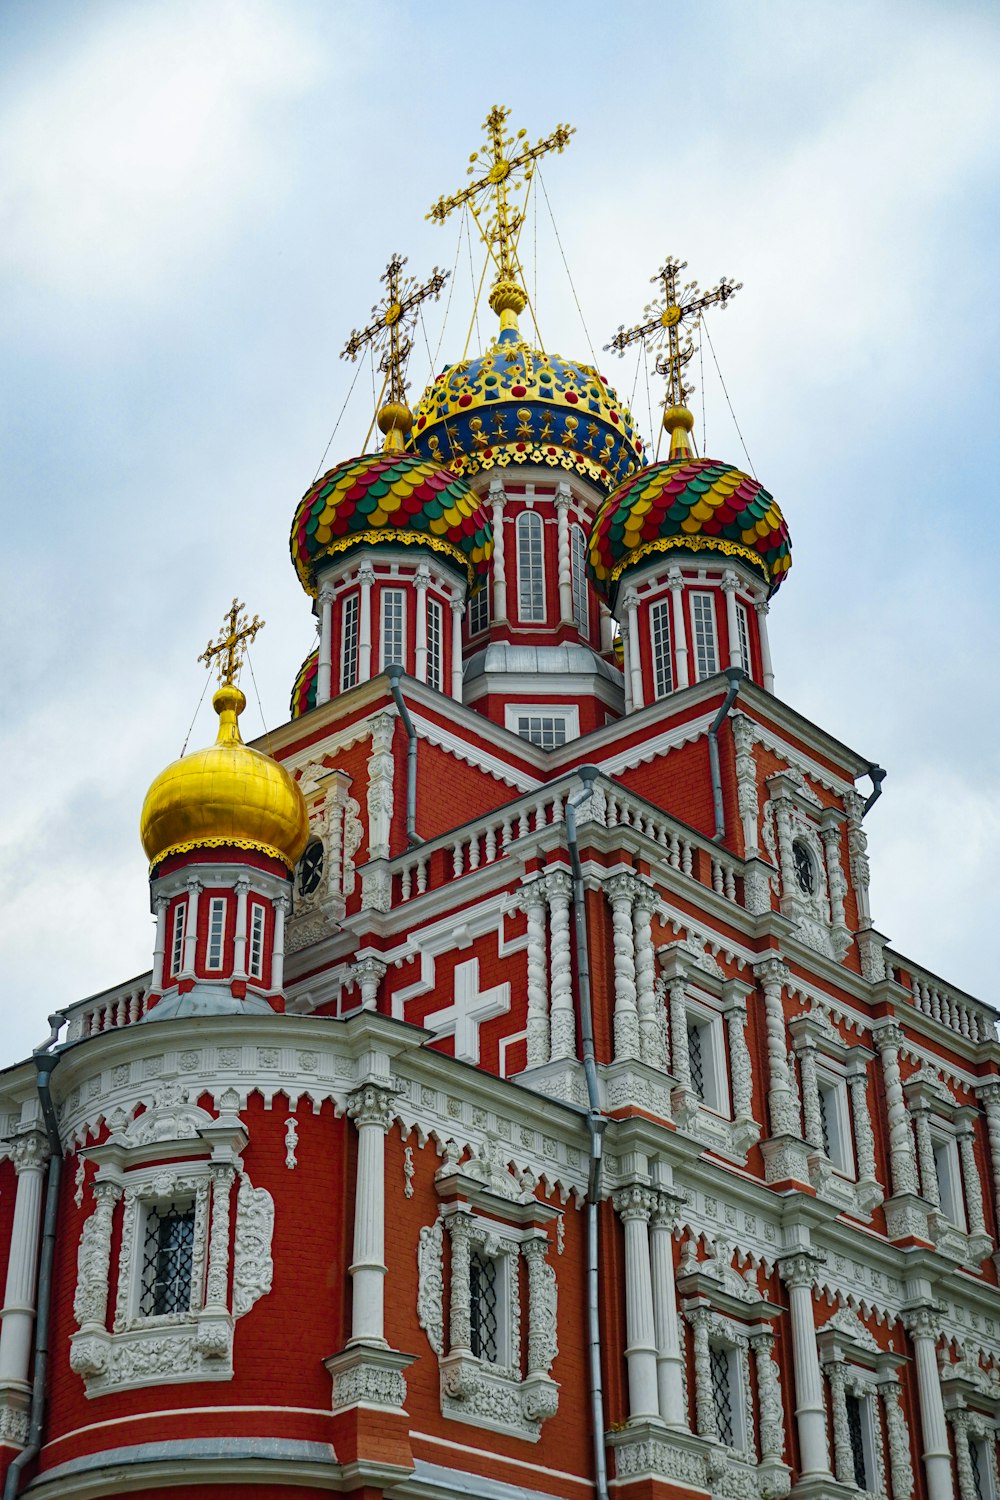 上に金の十字架が付いた大きな赤と白の建物